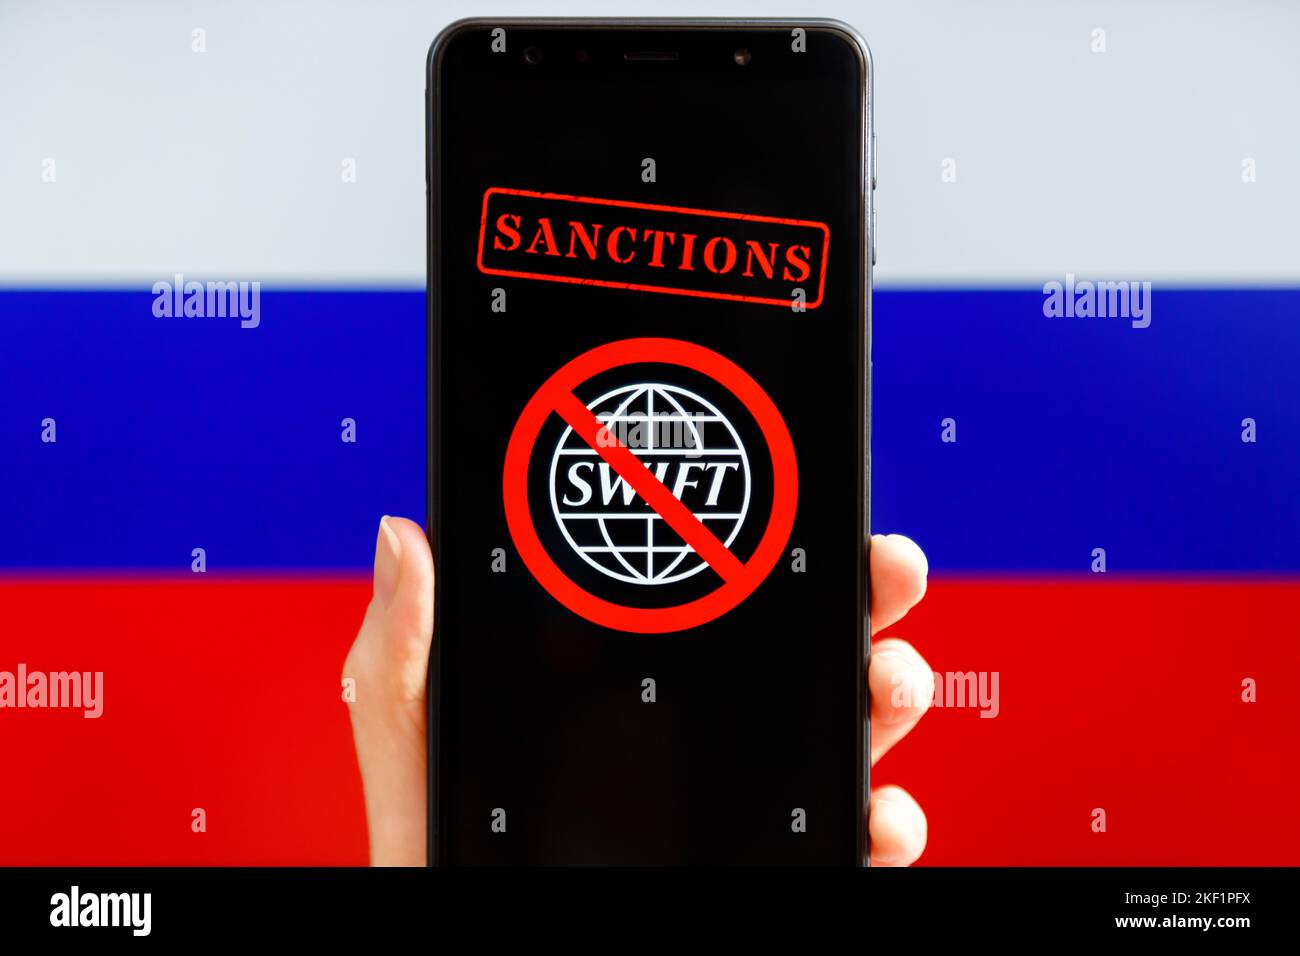 Ucraina, Kiev - Febbraio 23 2022: Mobile con logo SWIFT barrato e bandiera russa sullo sfondo. Sanzioni contro la Russia, disconnessione Foto Stock